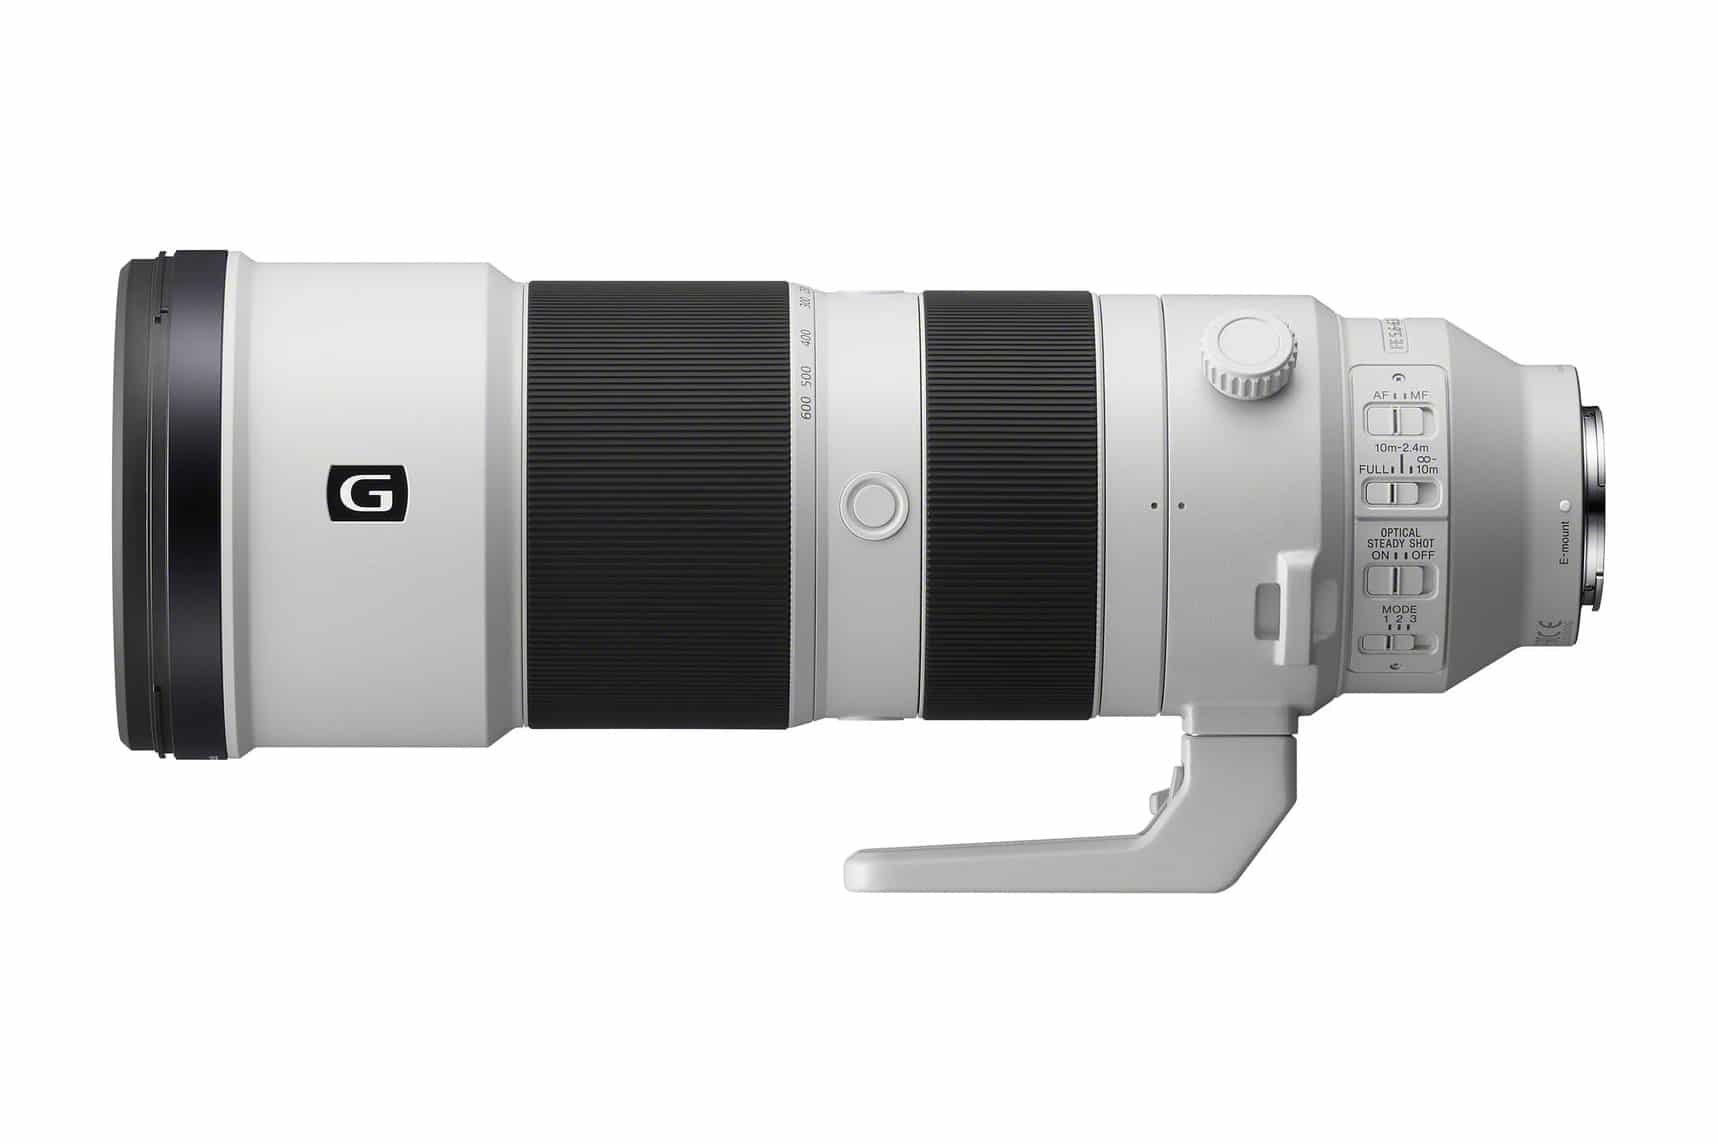 Surichinmoi heel veel Woordenlijst Gear Review: Sony 200-600 f/5.6-6.3 G Telephoto Lens